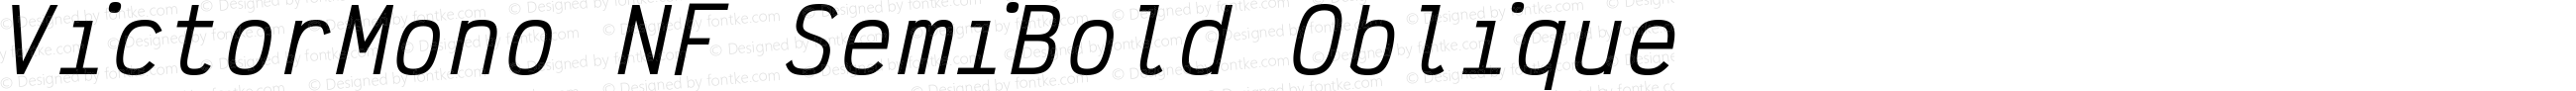 Victor Mono SemiBold Oblique Nerd Font Complete Mono Windows Compatible